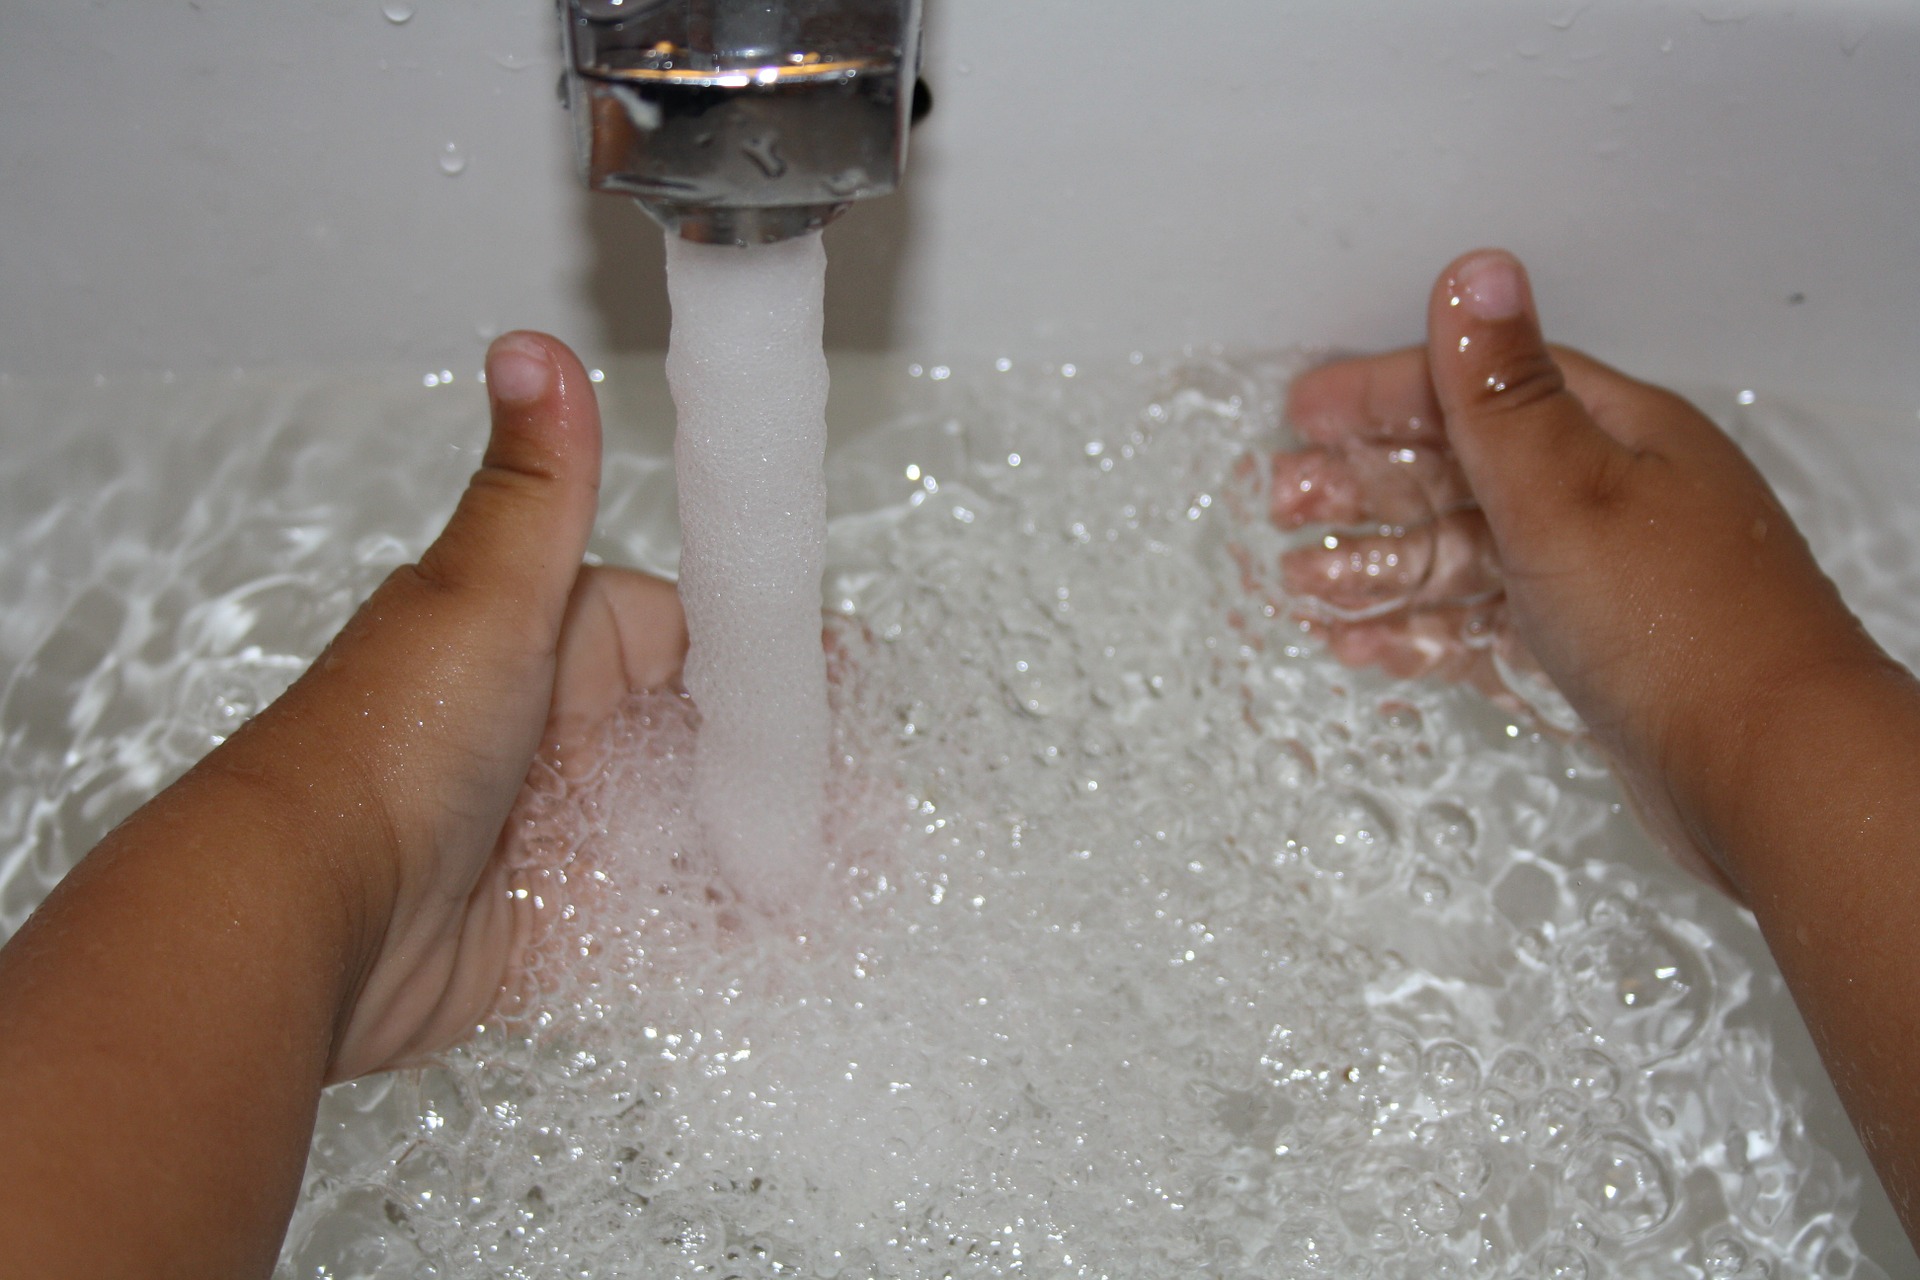 Vatten som rinner ur en vattenkran med två barnhänder i vattnet